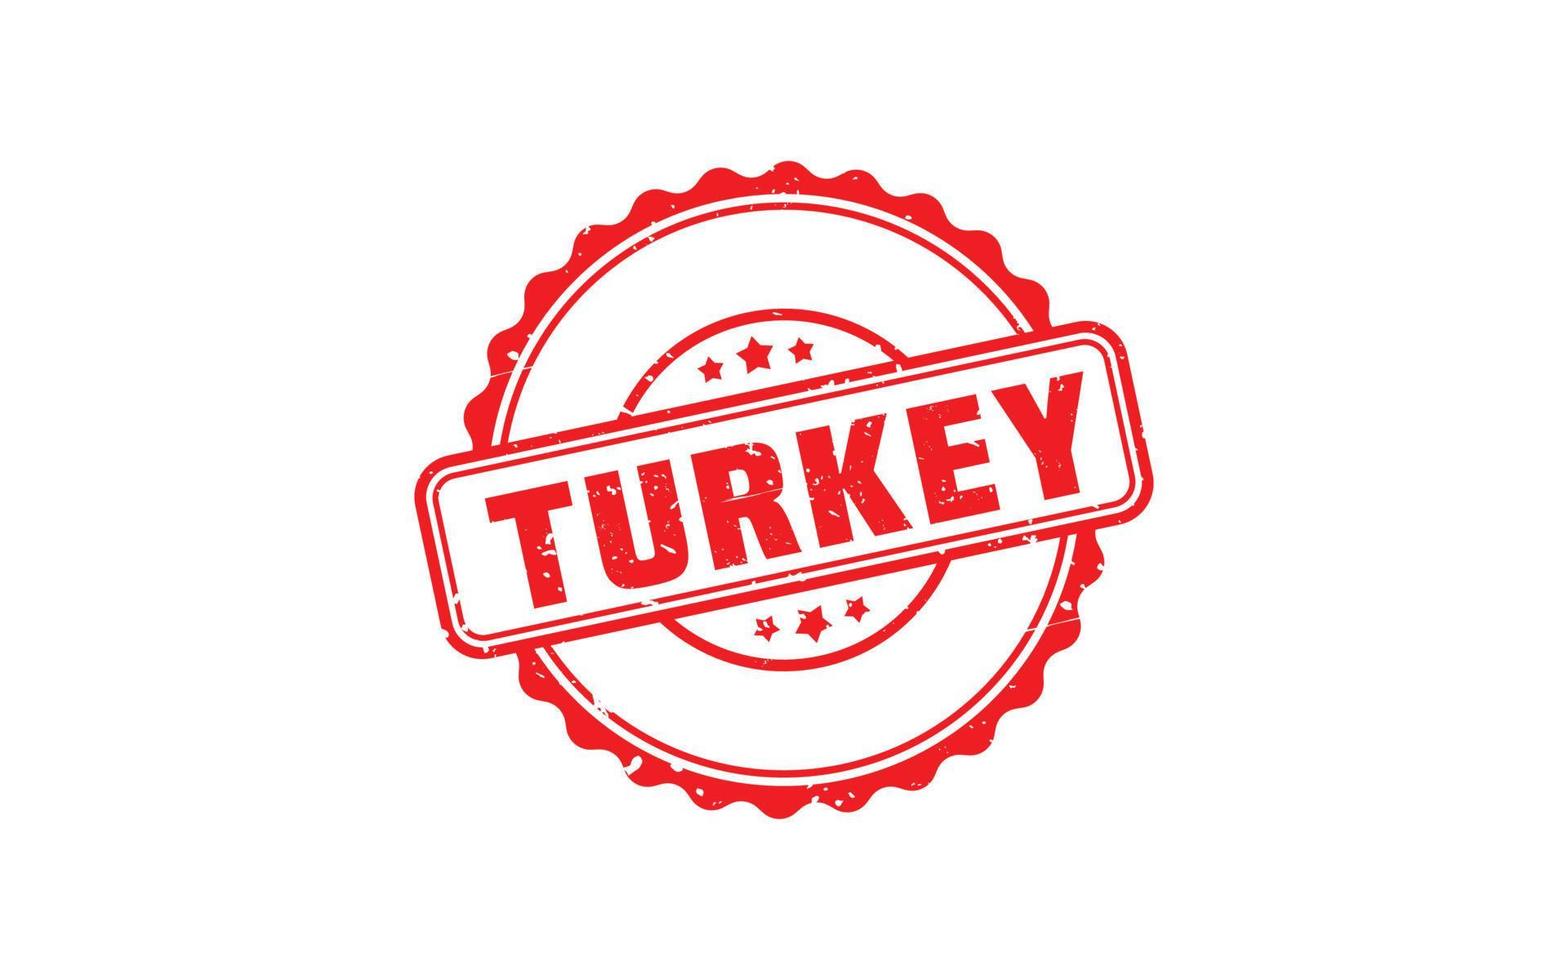 Türkei-Stempel mit Grunge-Stil auf weißem Hintergrund vektor